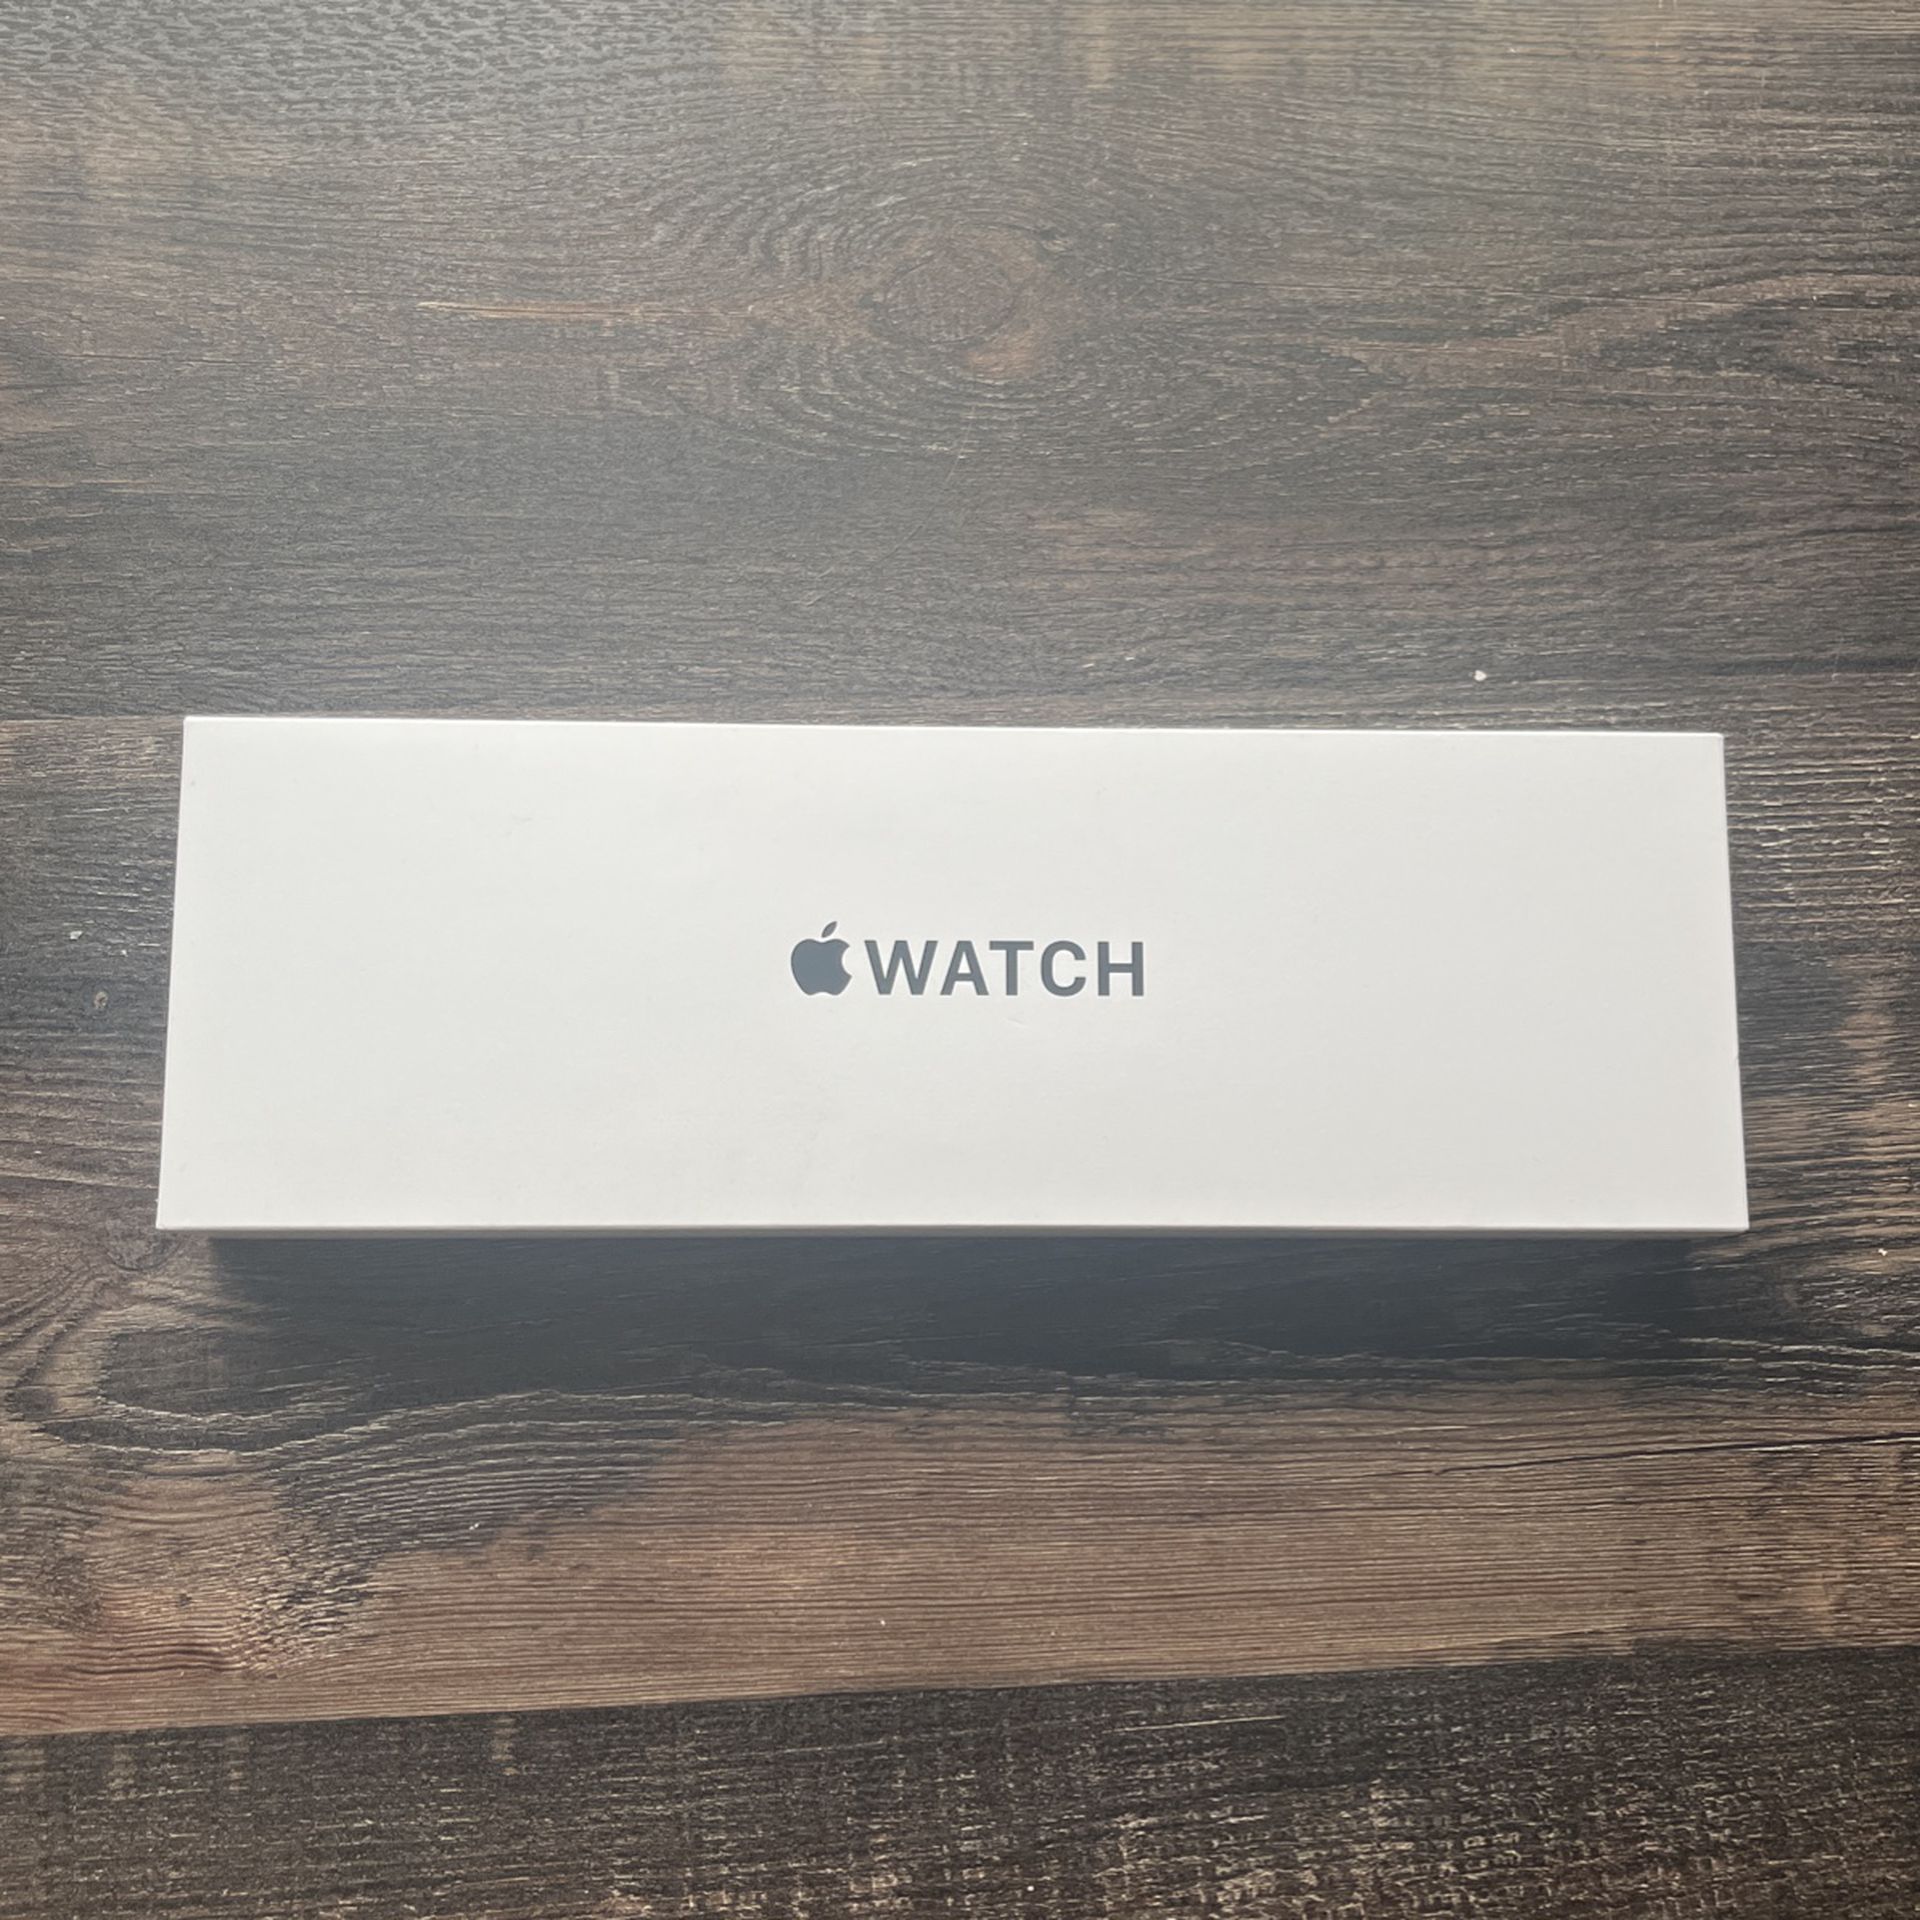 Apple Watch SE Gen 2